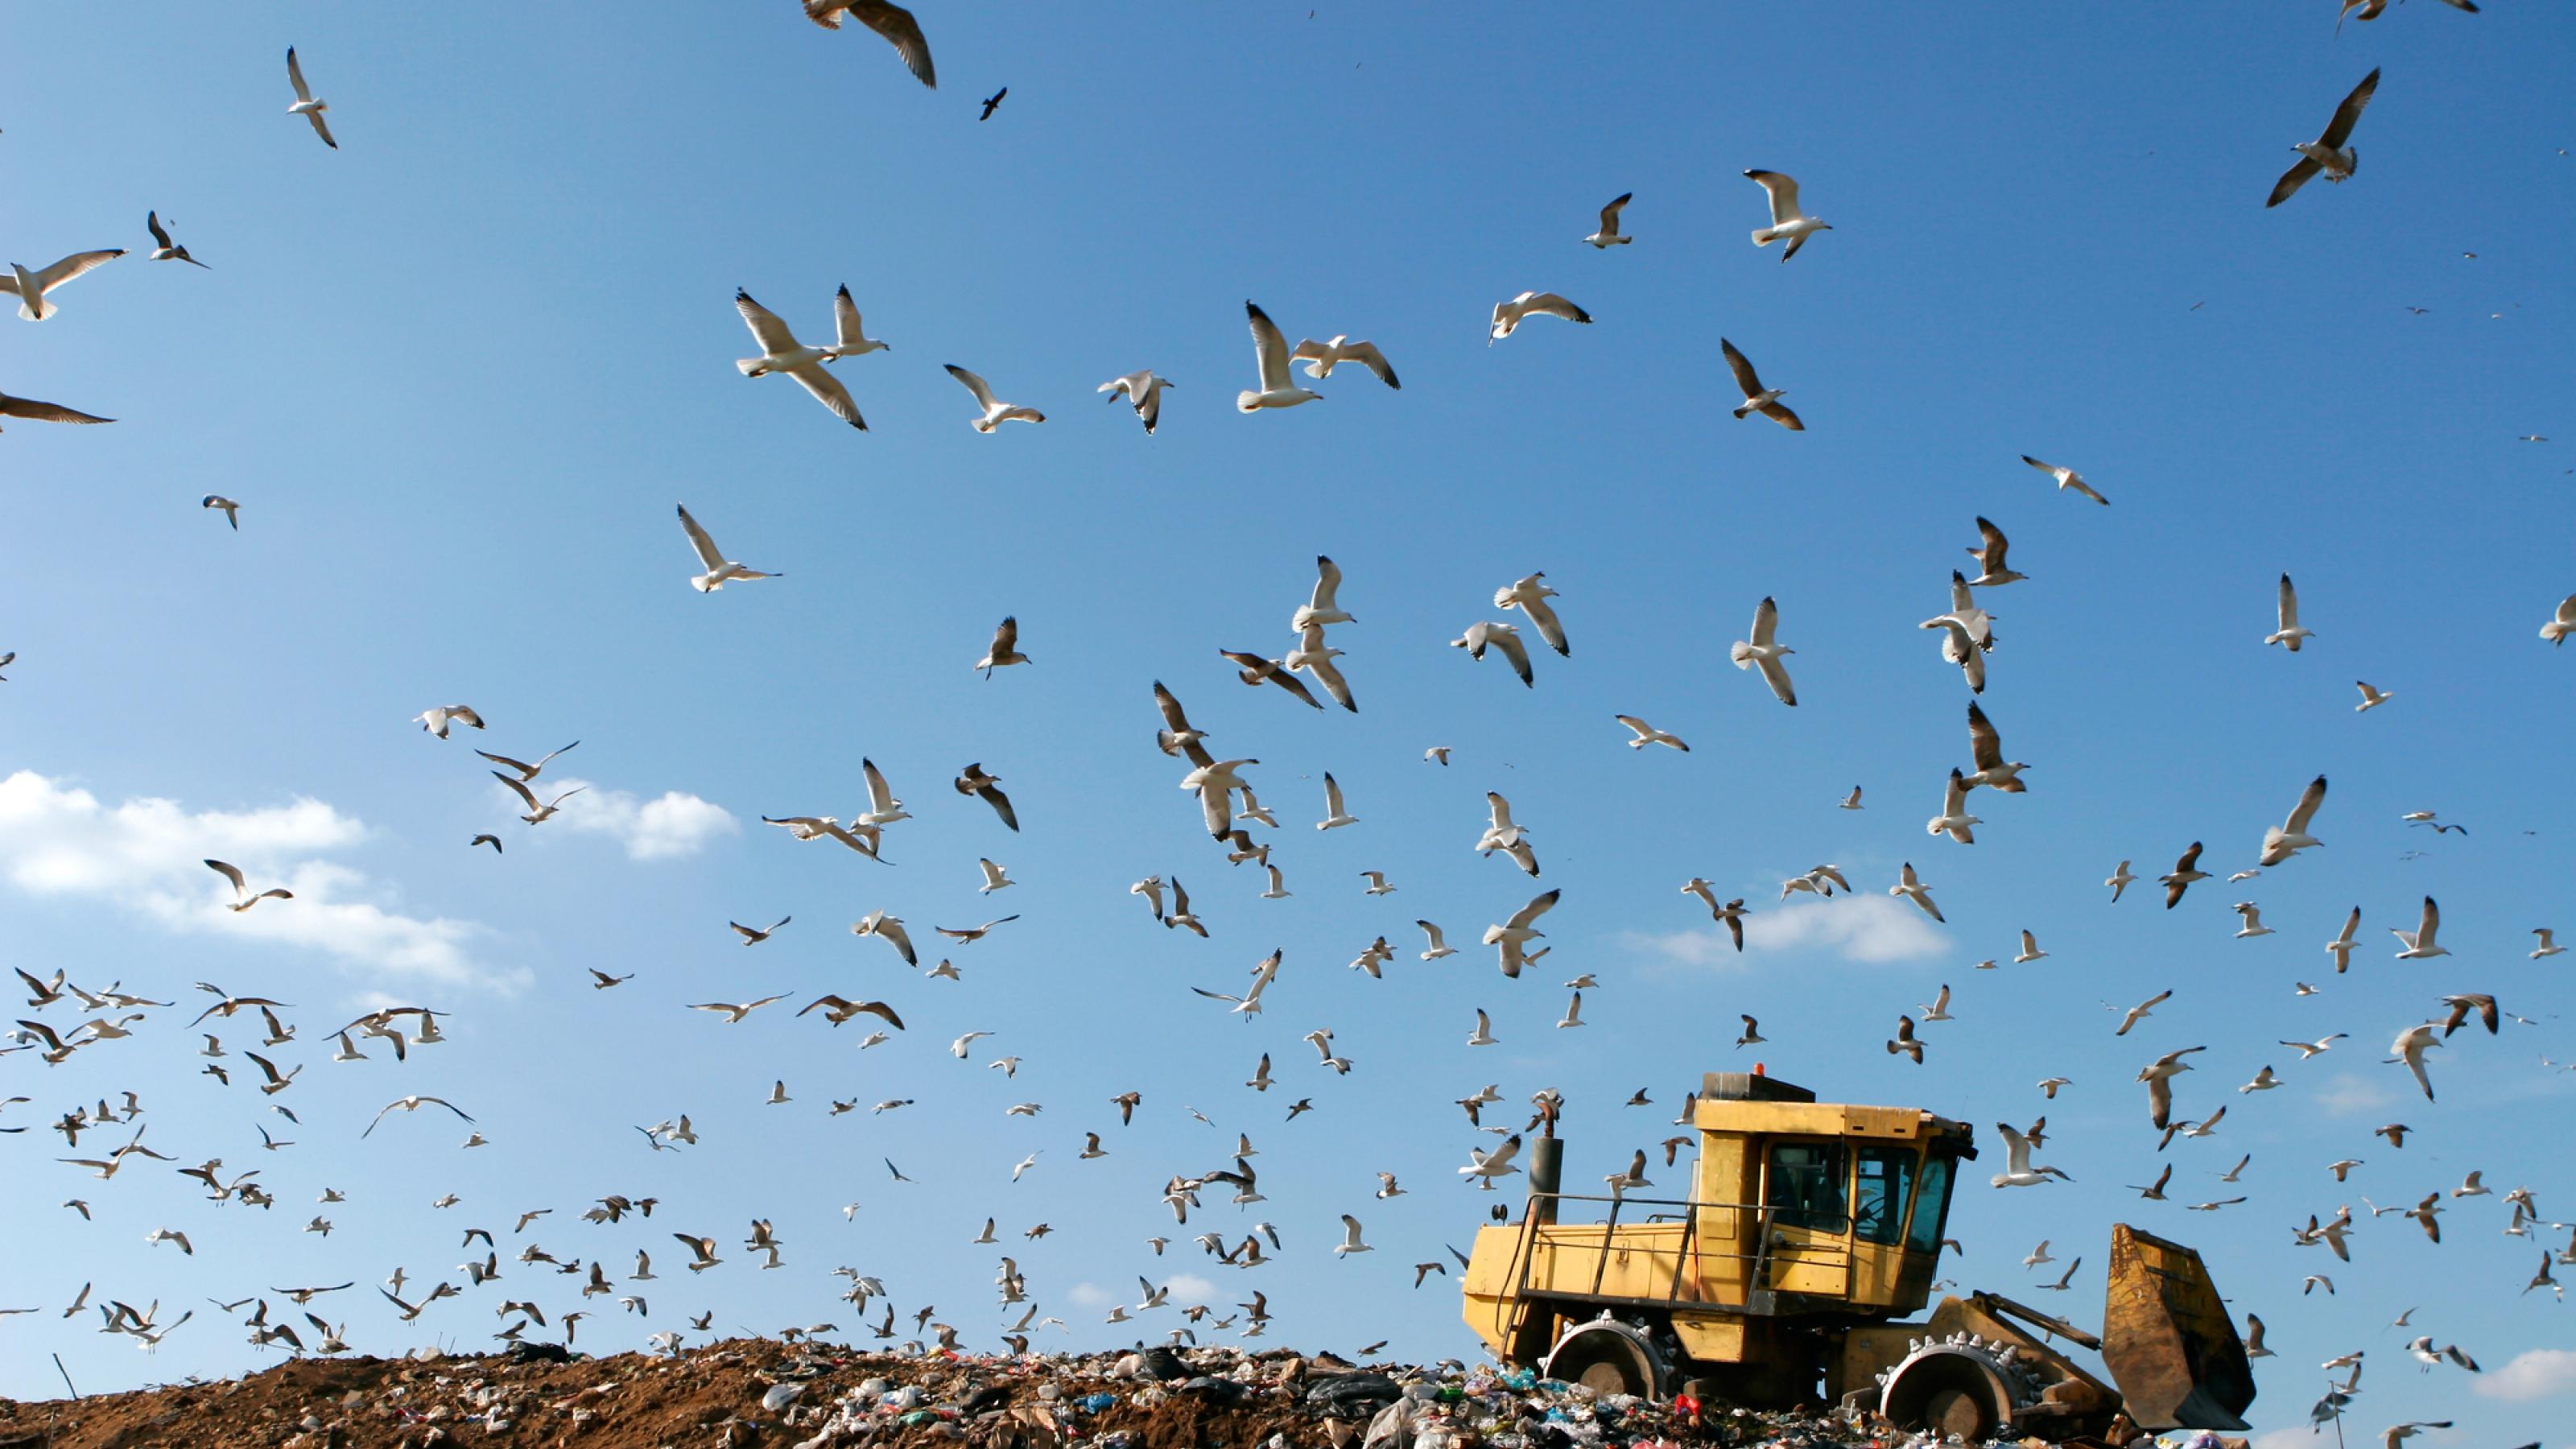 Möwen fliegen über einer Müllkippe, auf der ein Bulldozer steht.